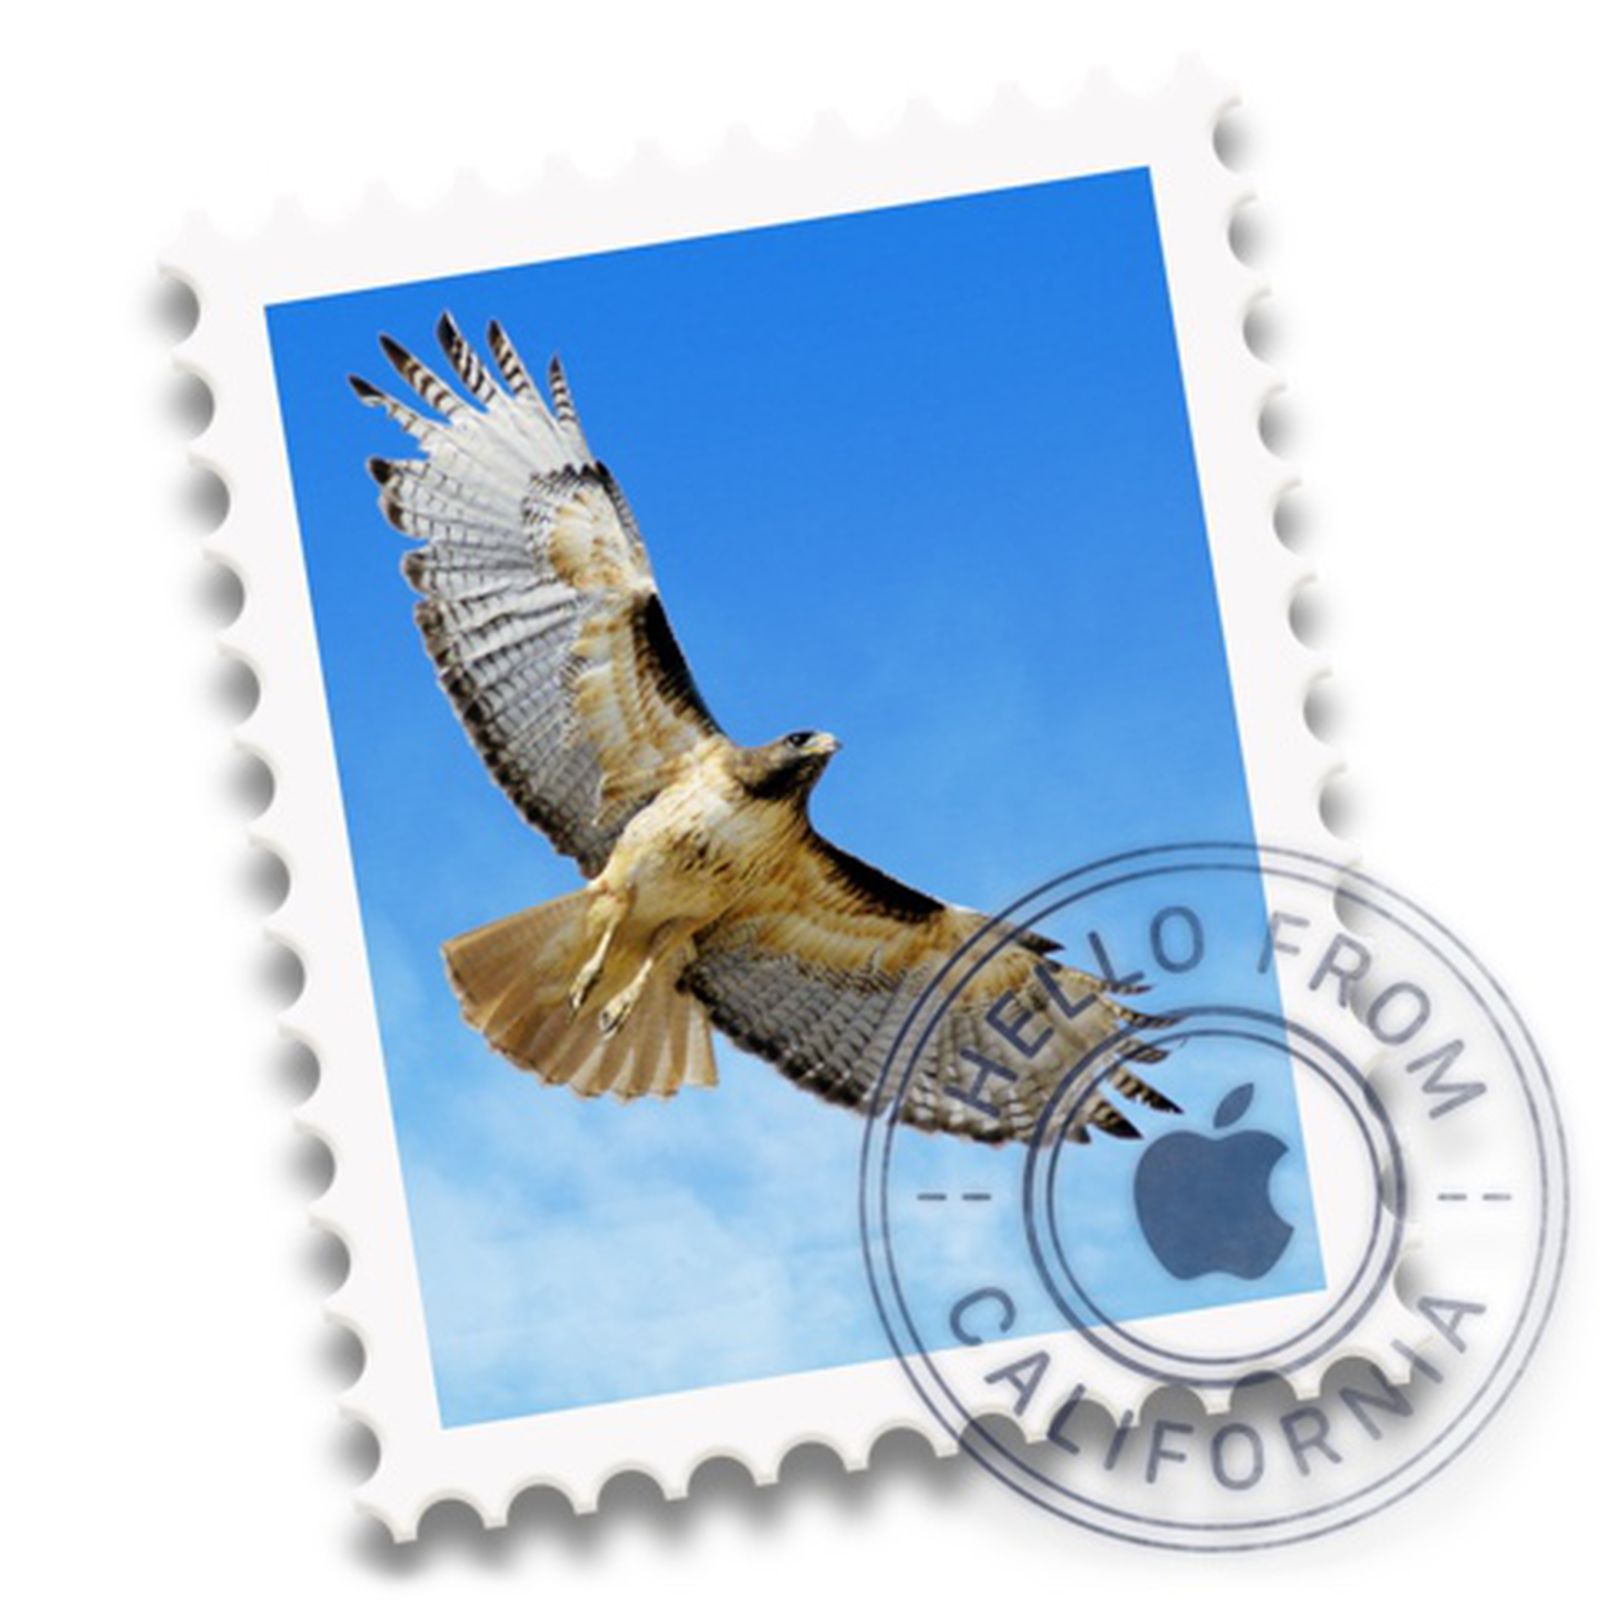 default mac email client